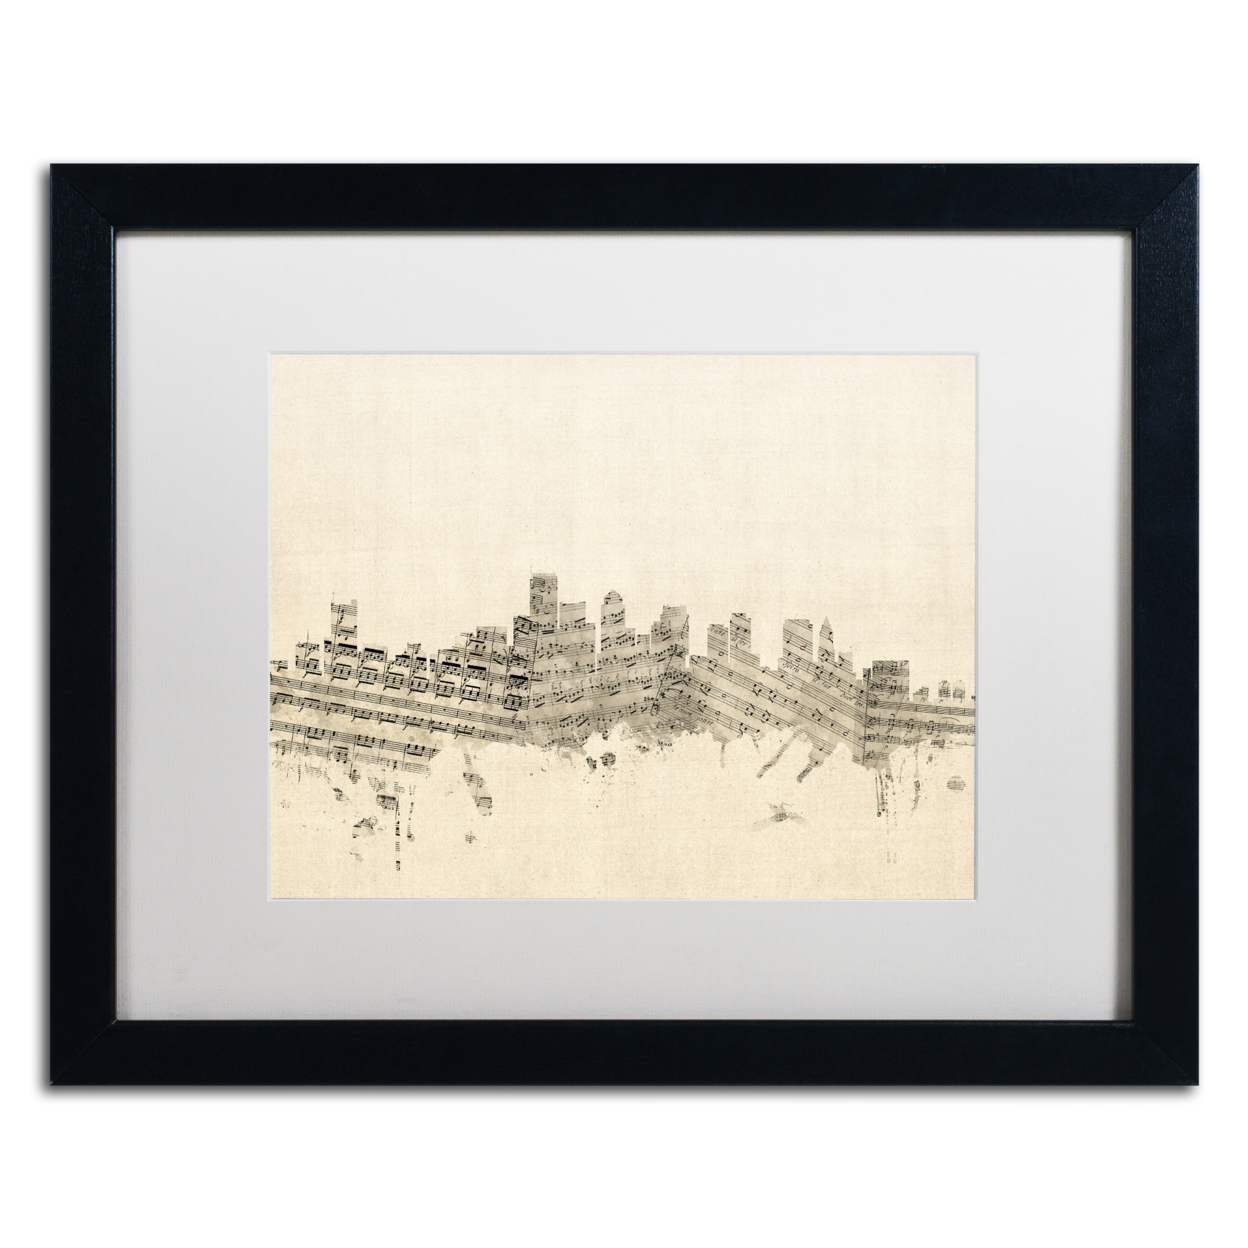 Michael Tompsett 'Boston Skyline Sheet Music' Black Wooden Framed Art 18 X 22 Inches